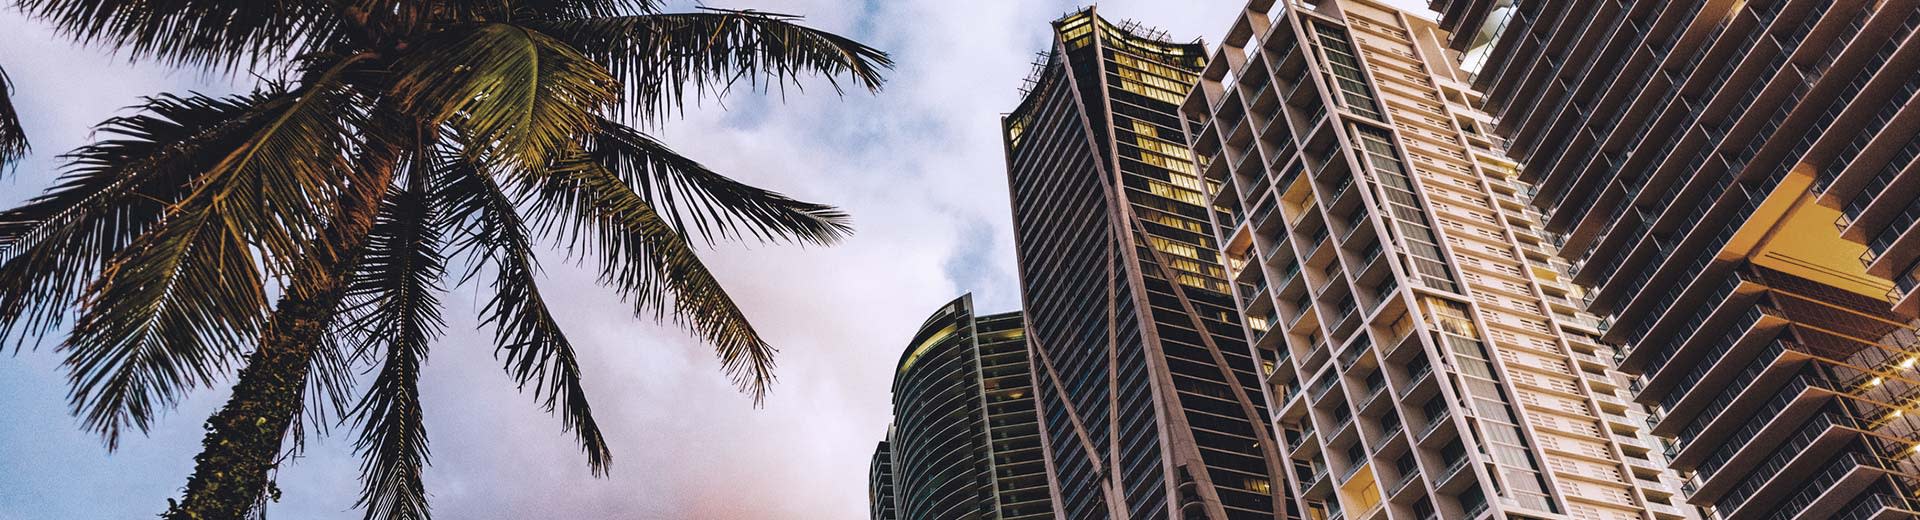 Palmiers et gratte-ciel exposés à Miami.